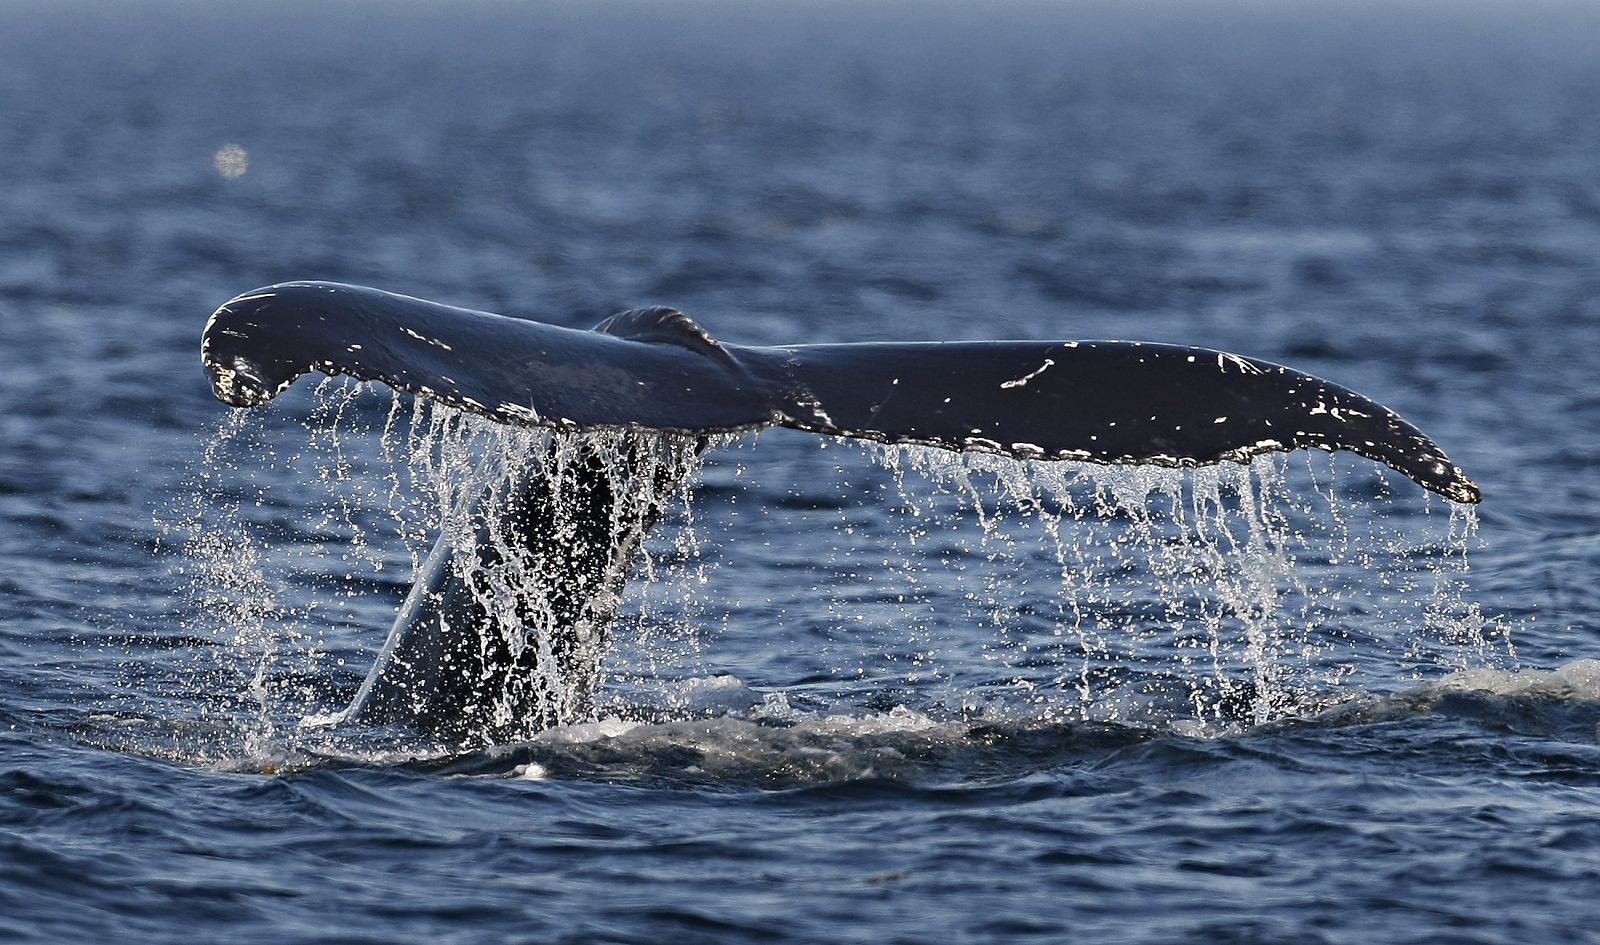 La CBI podría volver a aprobar la caza comercial de ballenas para controlar a países como Japón, que amparados bajo la "caza científica" matan cientos de ejemplares cada año.